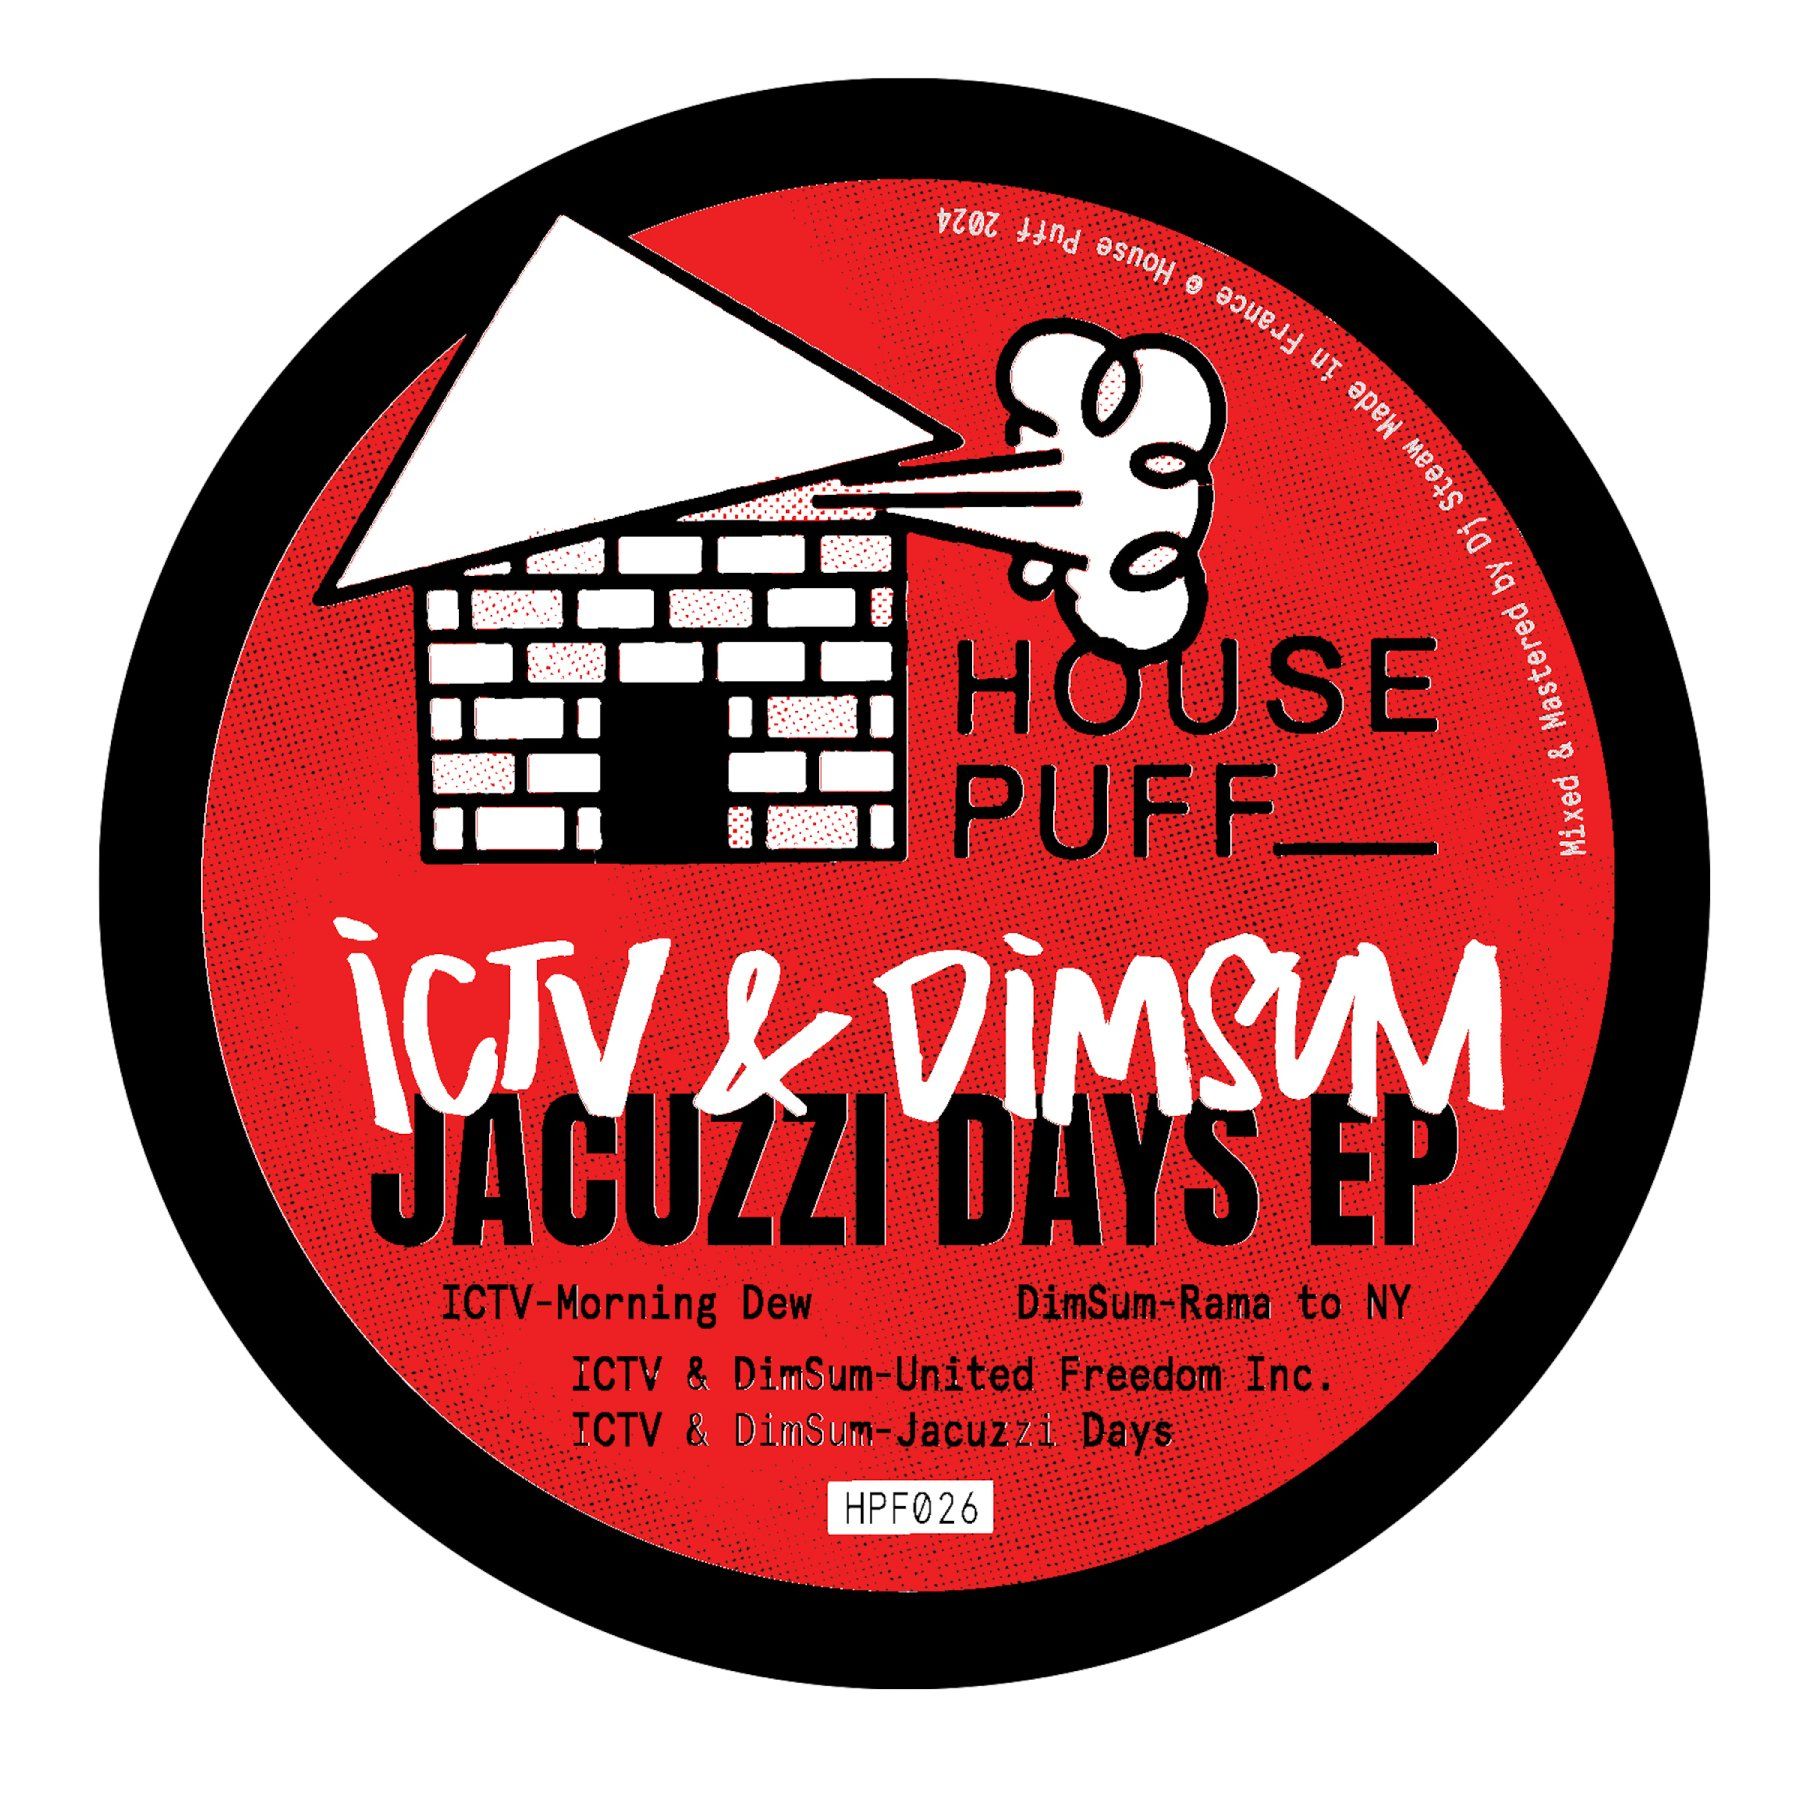 ICTV & DimSum/JACUZZI DAYS EP 12"